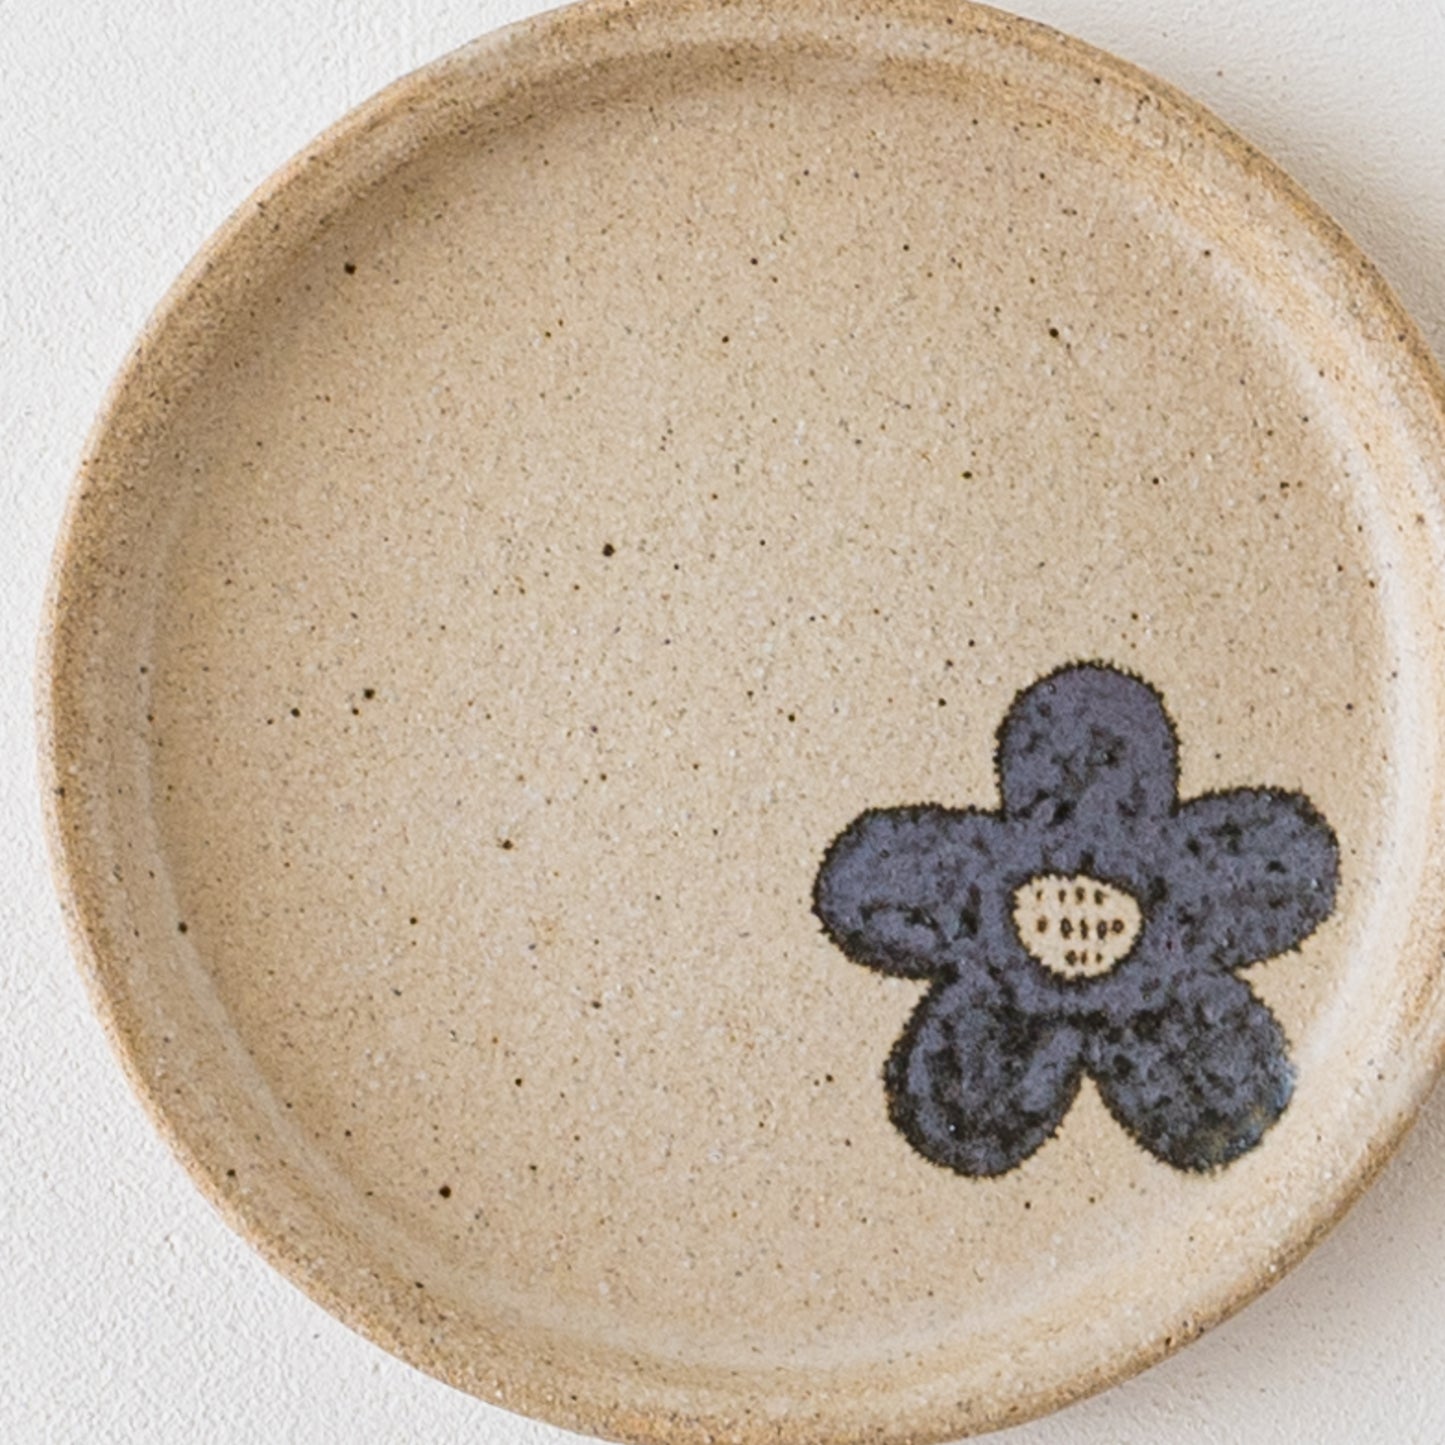 ぼんやり優しいお花模様にほっこり癒される岡村朝子さんの丸皿